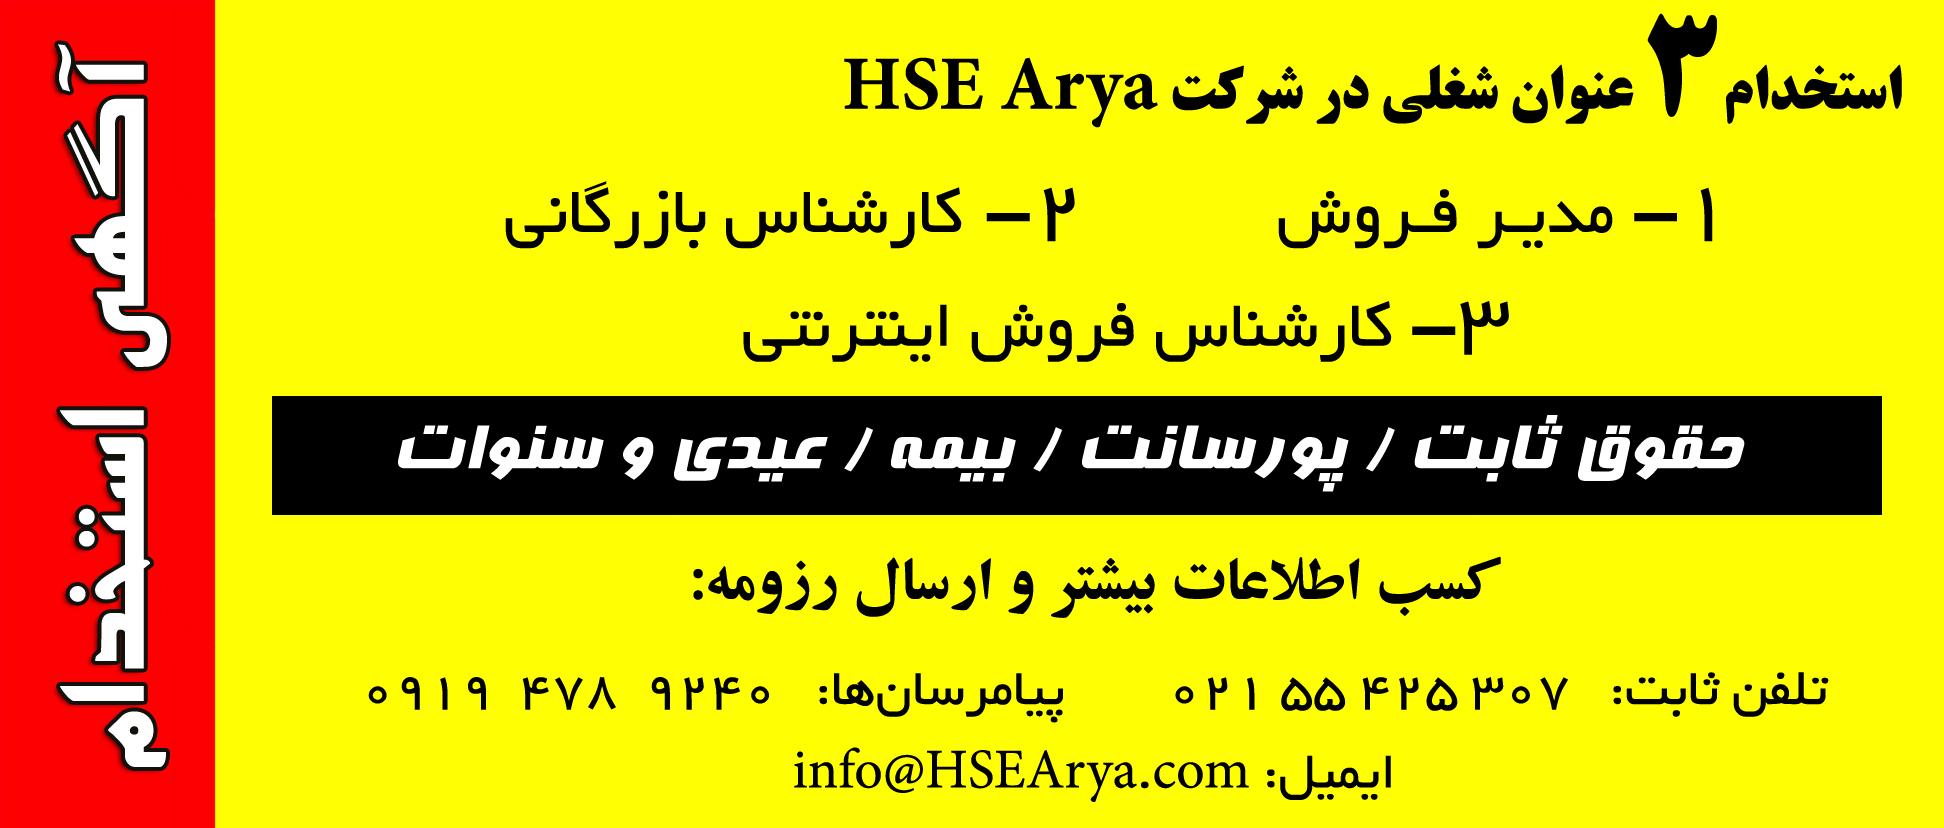 استخدام 3 عنوان شغلی در شرکت HSE Arya